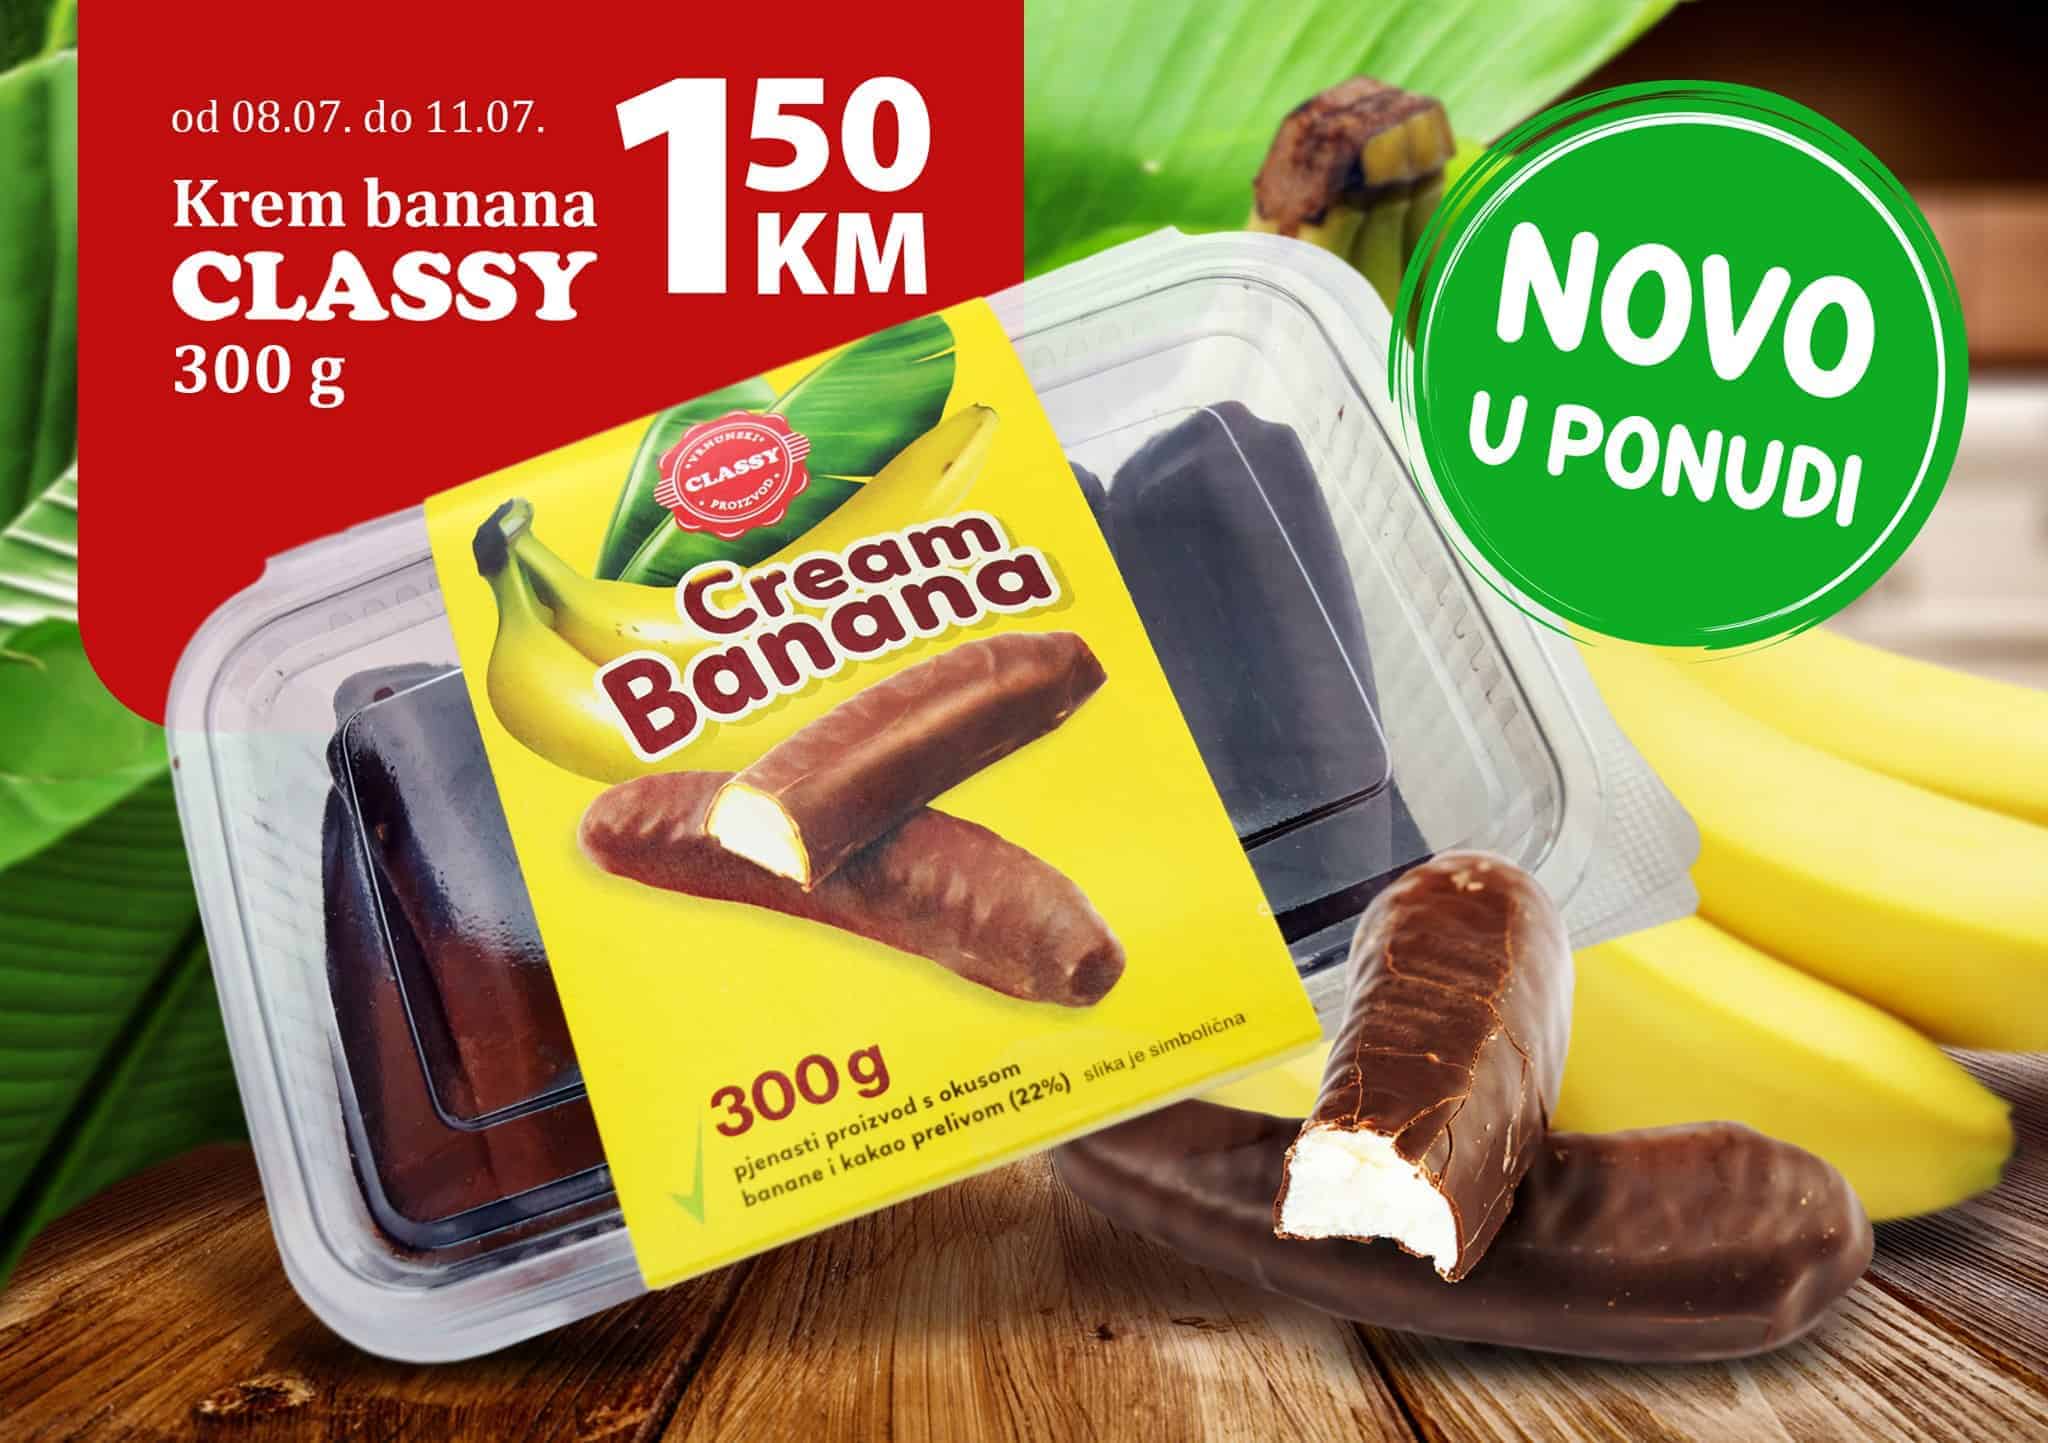 Novi CLASSY slatkiš je tu za Vas! Omiljene čokoladne bananice svih generacija dolaze u super pakovanju od 300 g po cijeni od 1,50 KM!